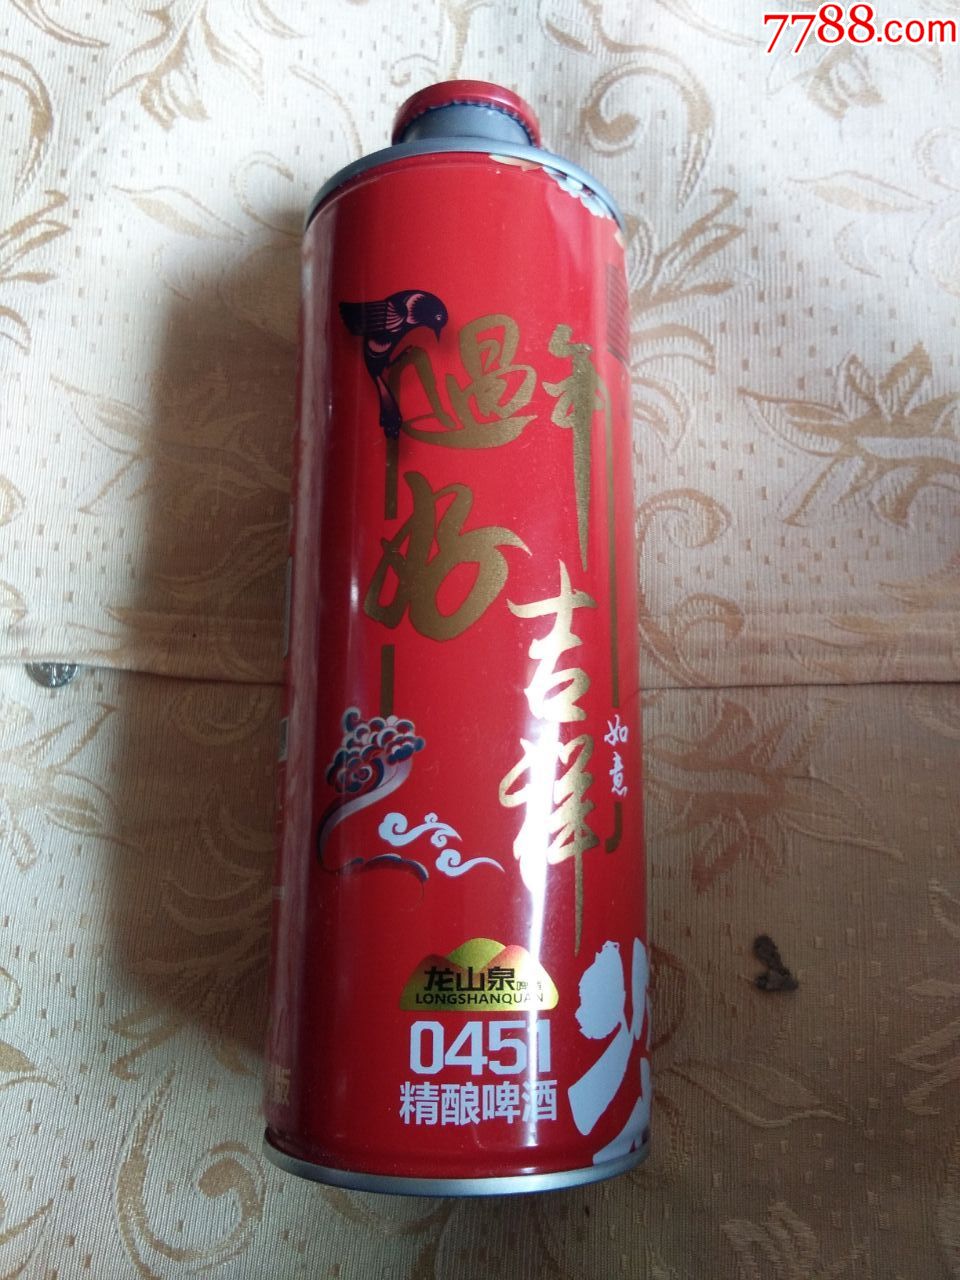 龙山泉原浆啤酒铁罐------2020春节贺岁版过年好套罐之吉祥如意10